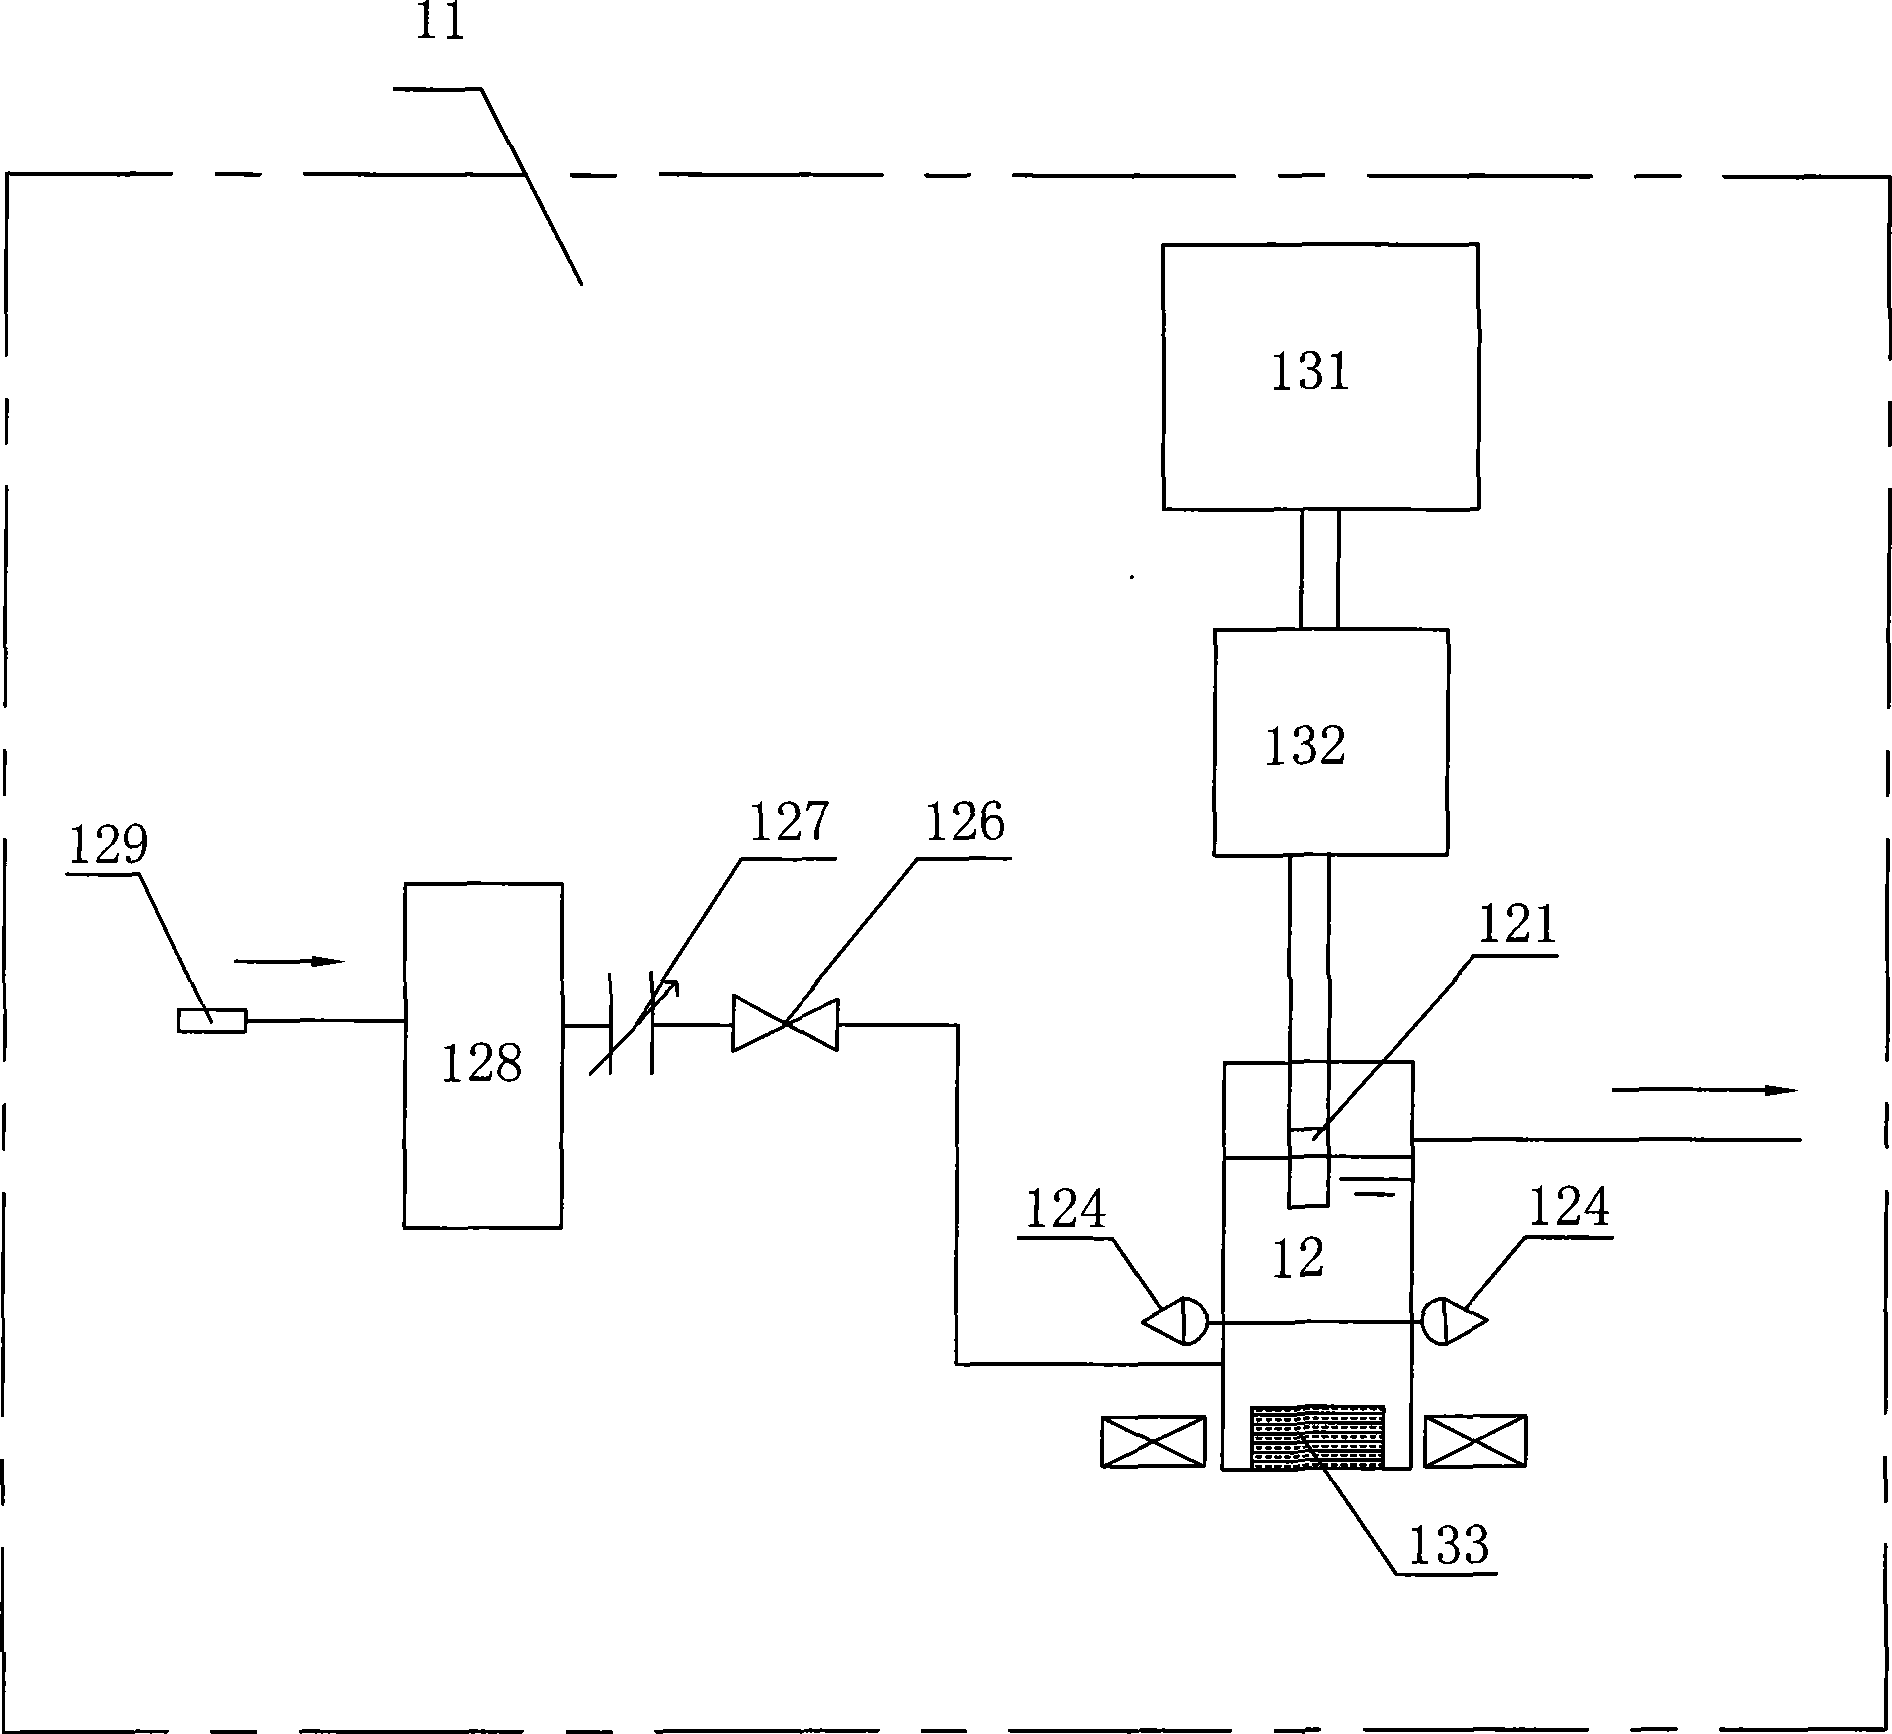 Boiler operating parameter recorder